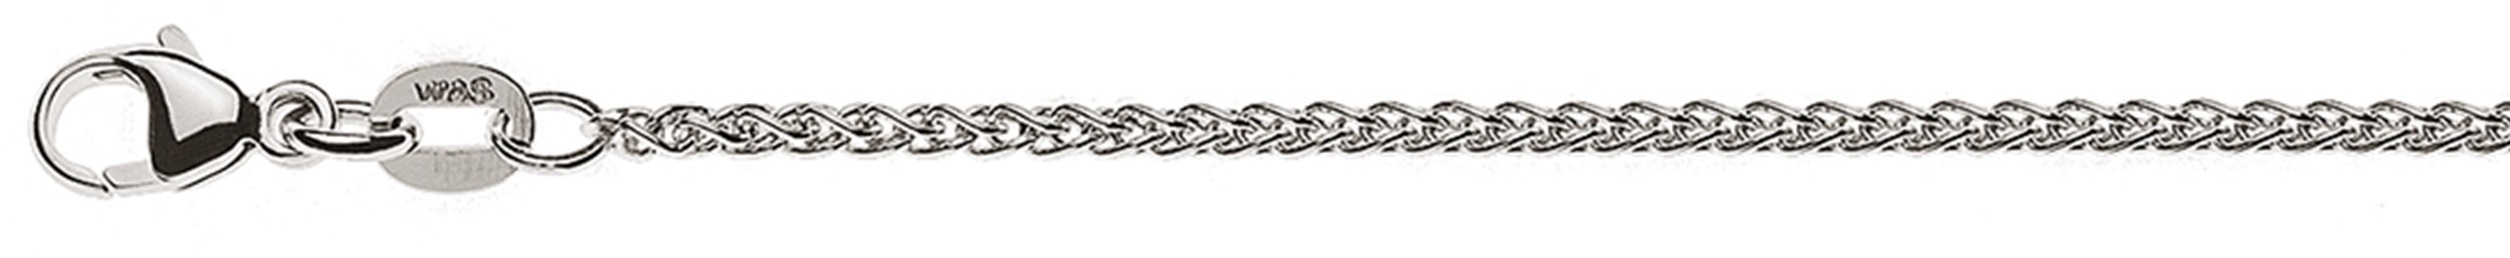 AURONOS Élégance Necklace white gold 14K cable chain 38cm 1.65mm